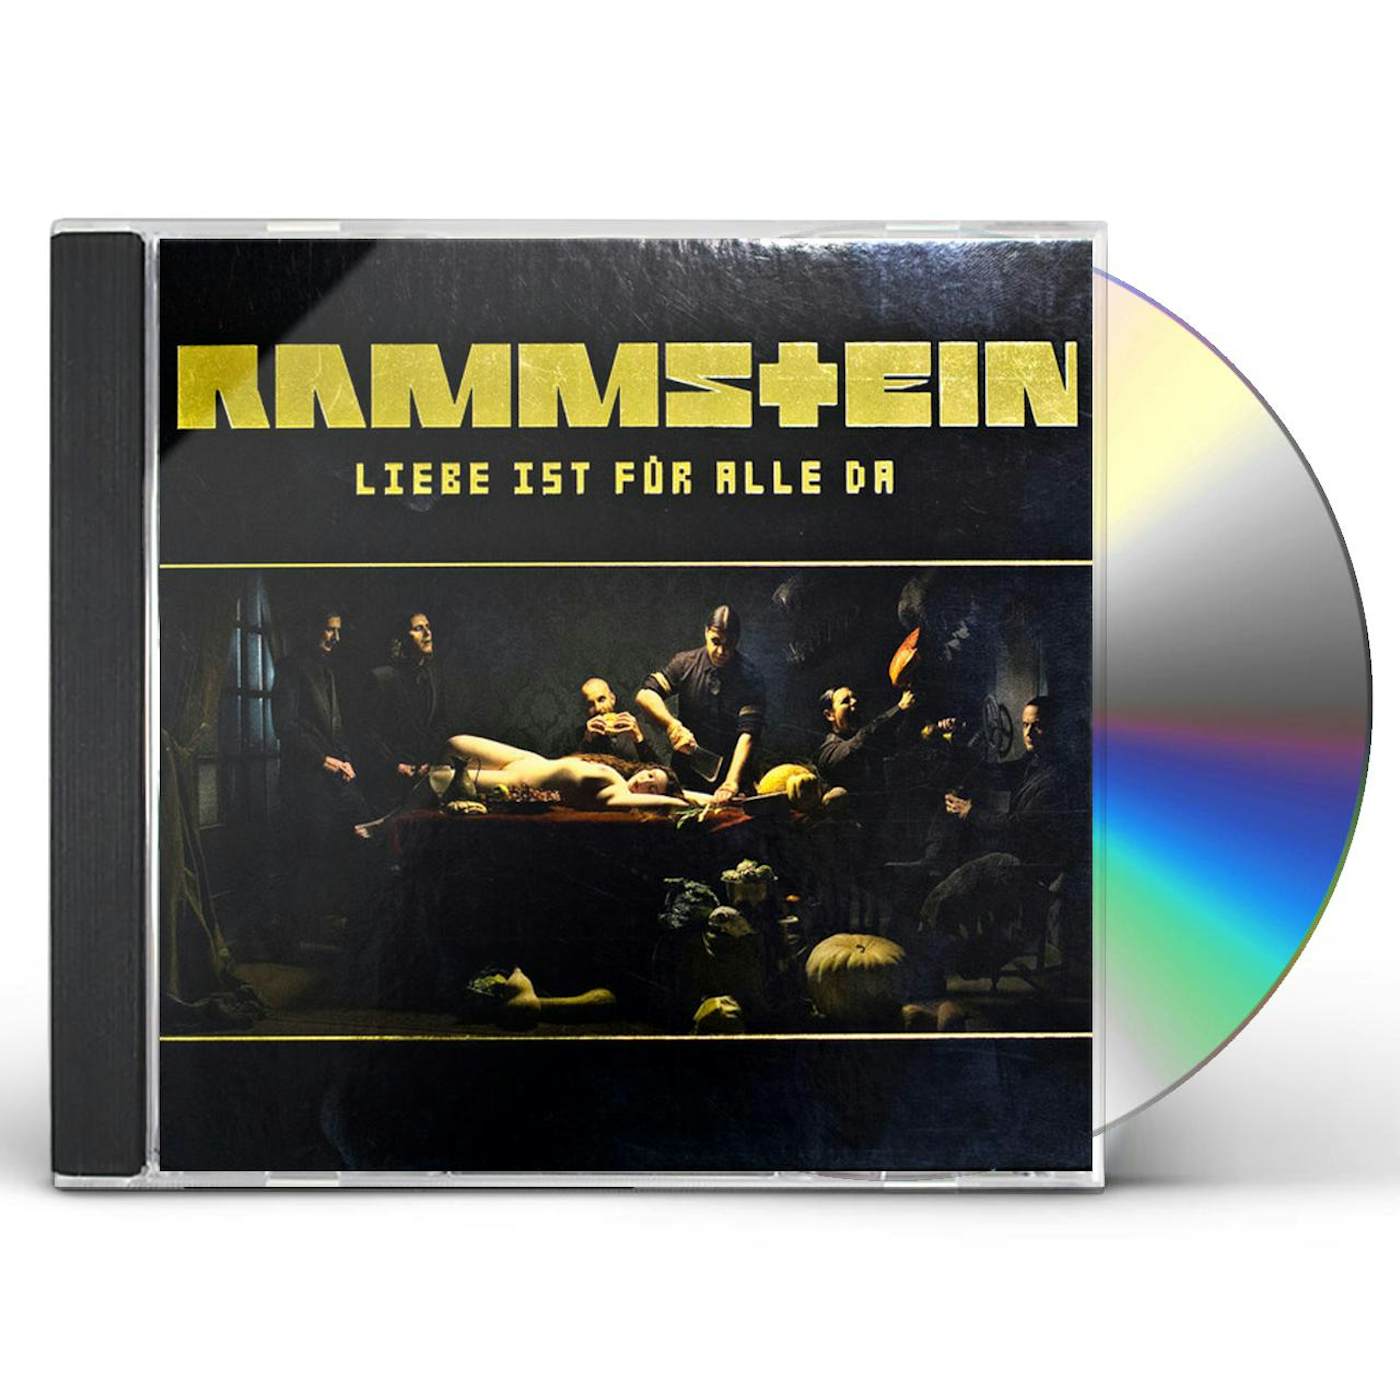 Rammstein LIEBE IST FUR ALLE DA CD